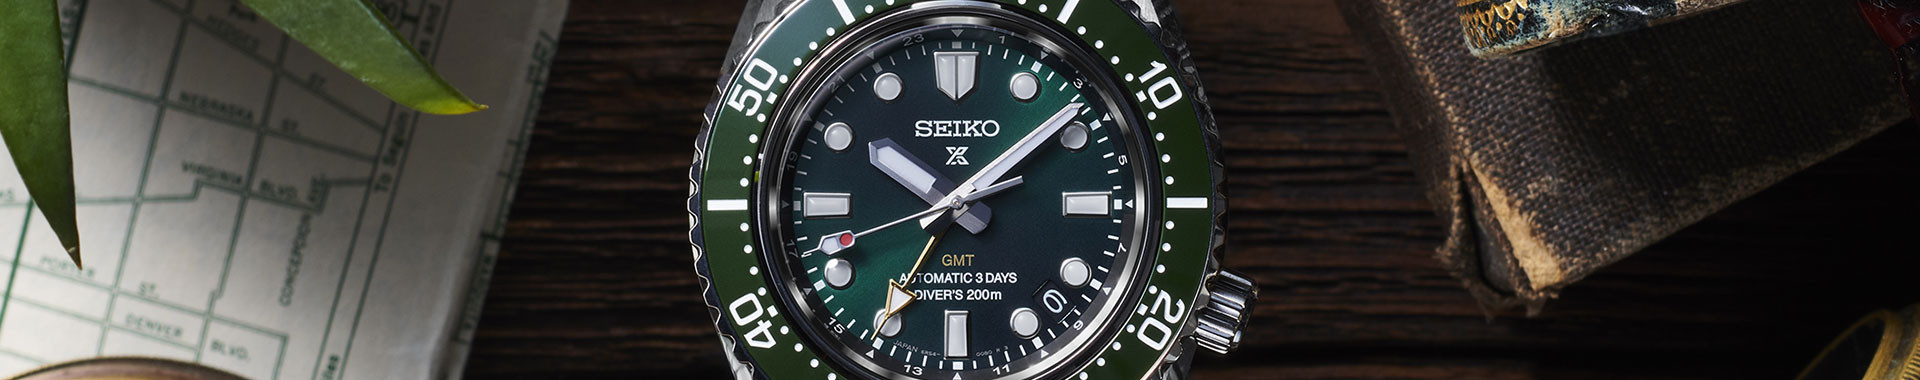 Orologio GMT - Seiko ufficiale